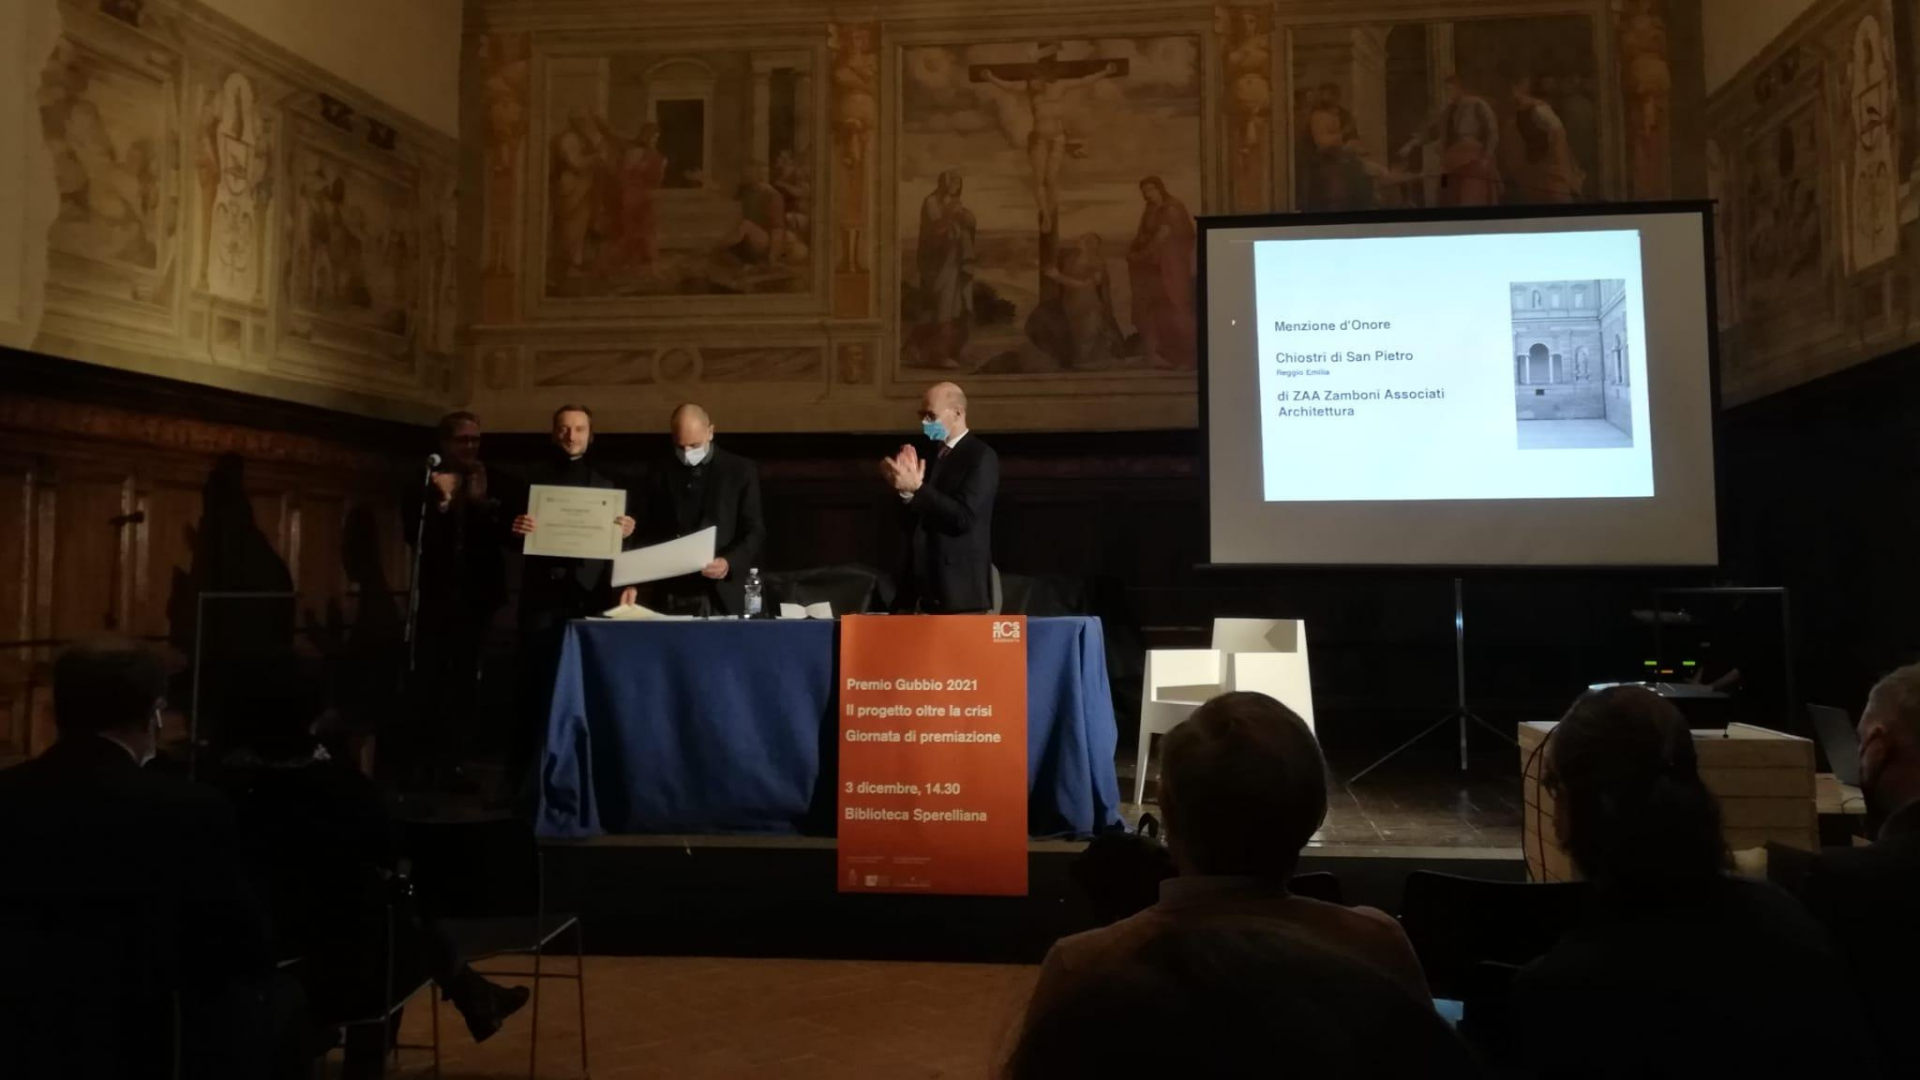 Al restauro dei Chiostri di San Pietro la Menzione d’onore al prestigioso Premio Gubbio 2021